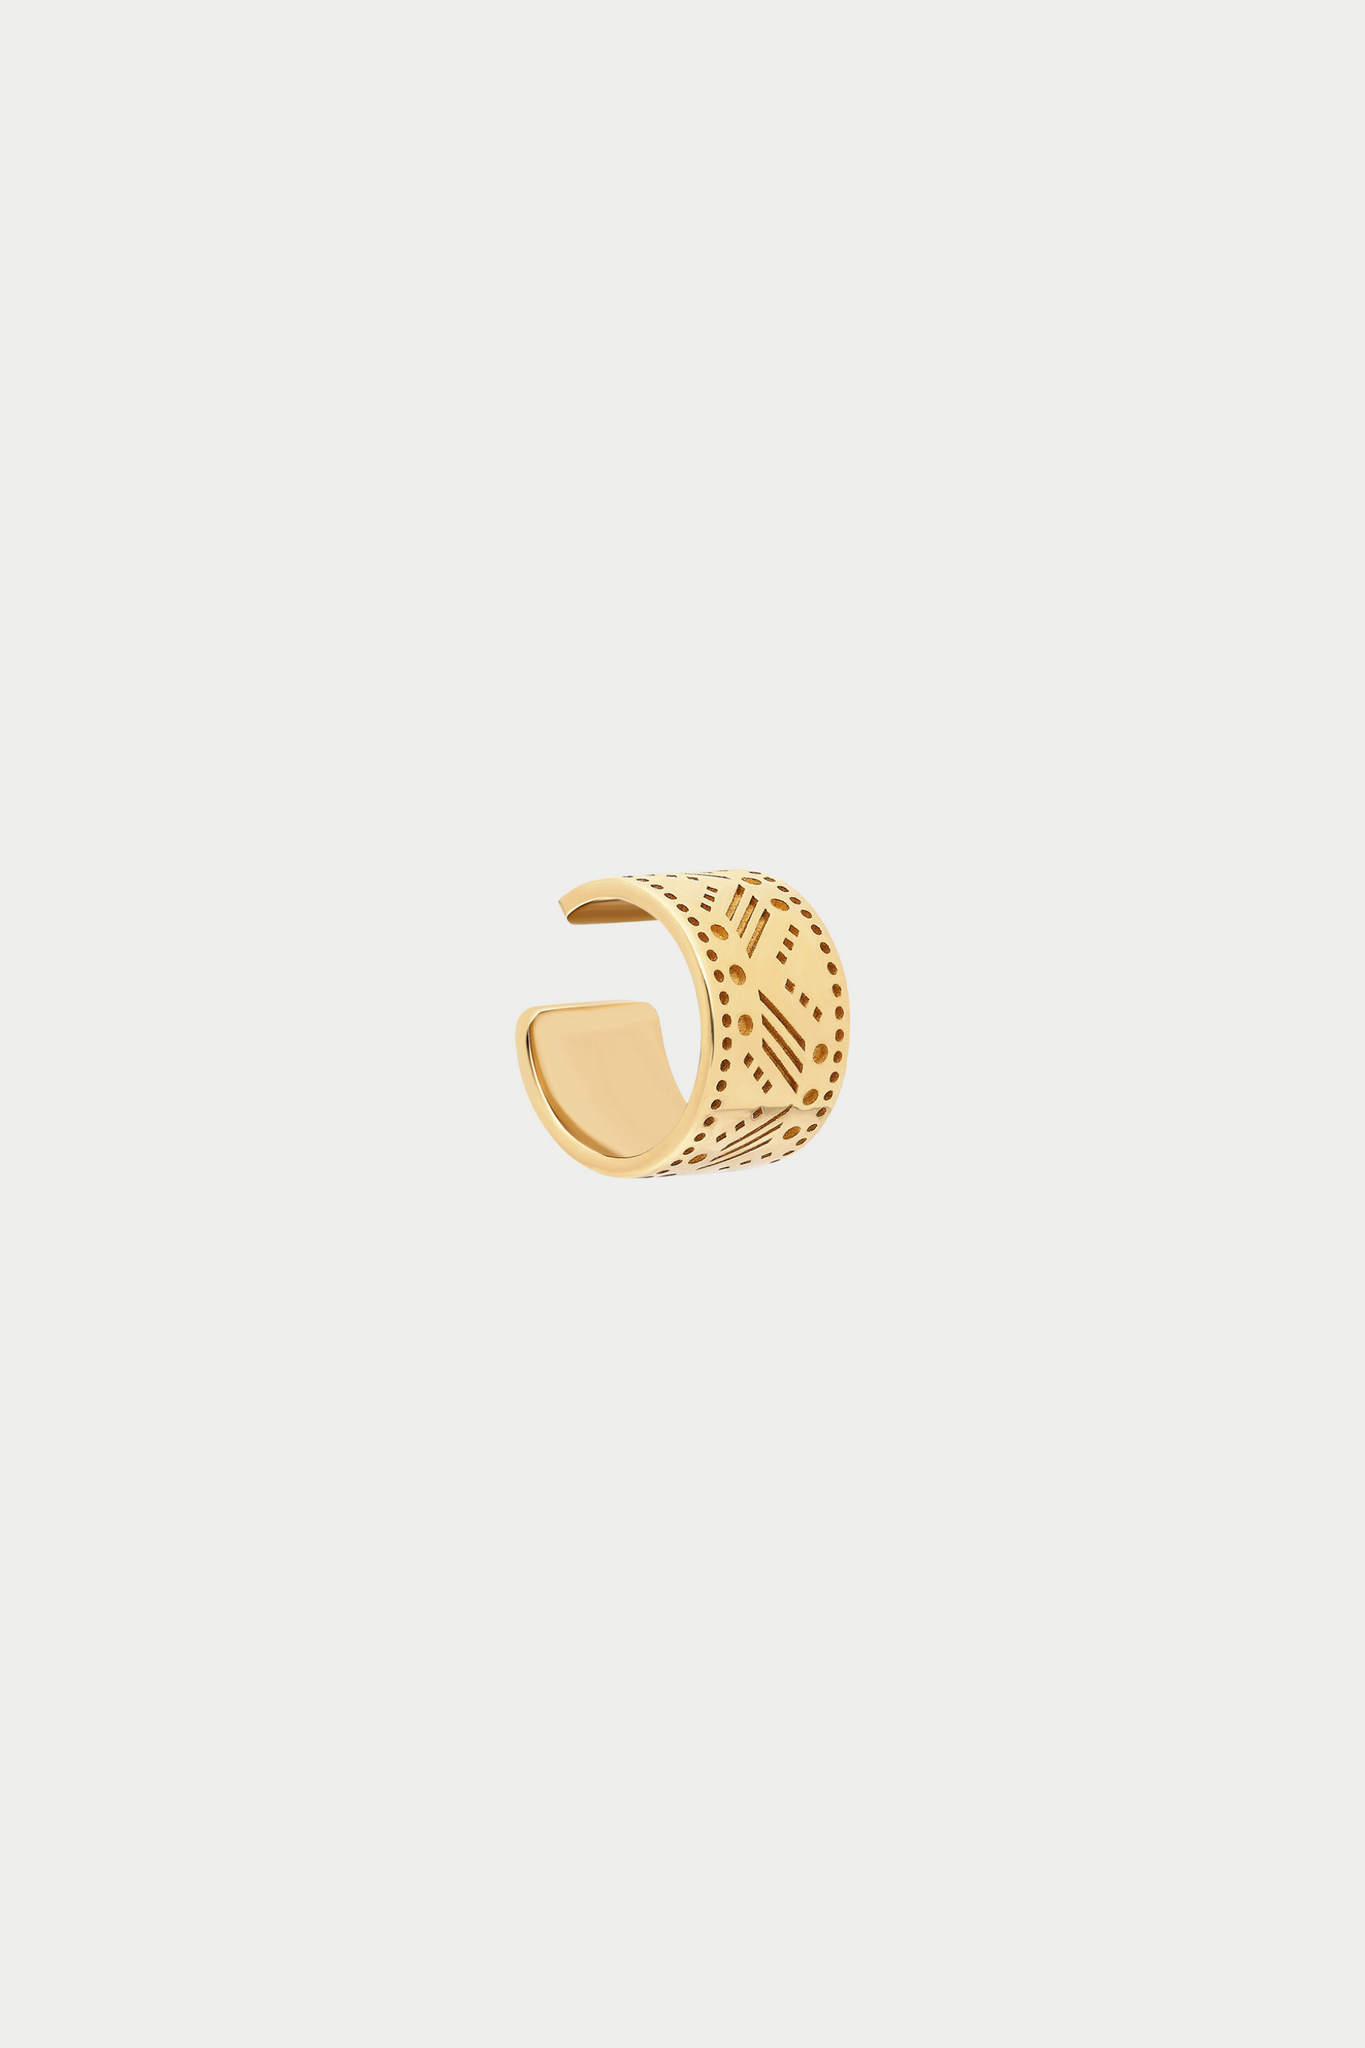 ita - “Caona” Series II Pattern Ear Cuff, Yellow Gold